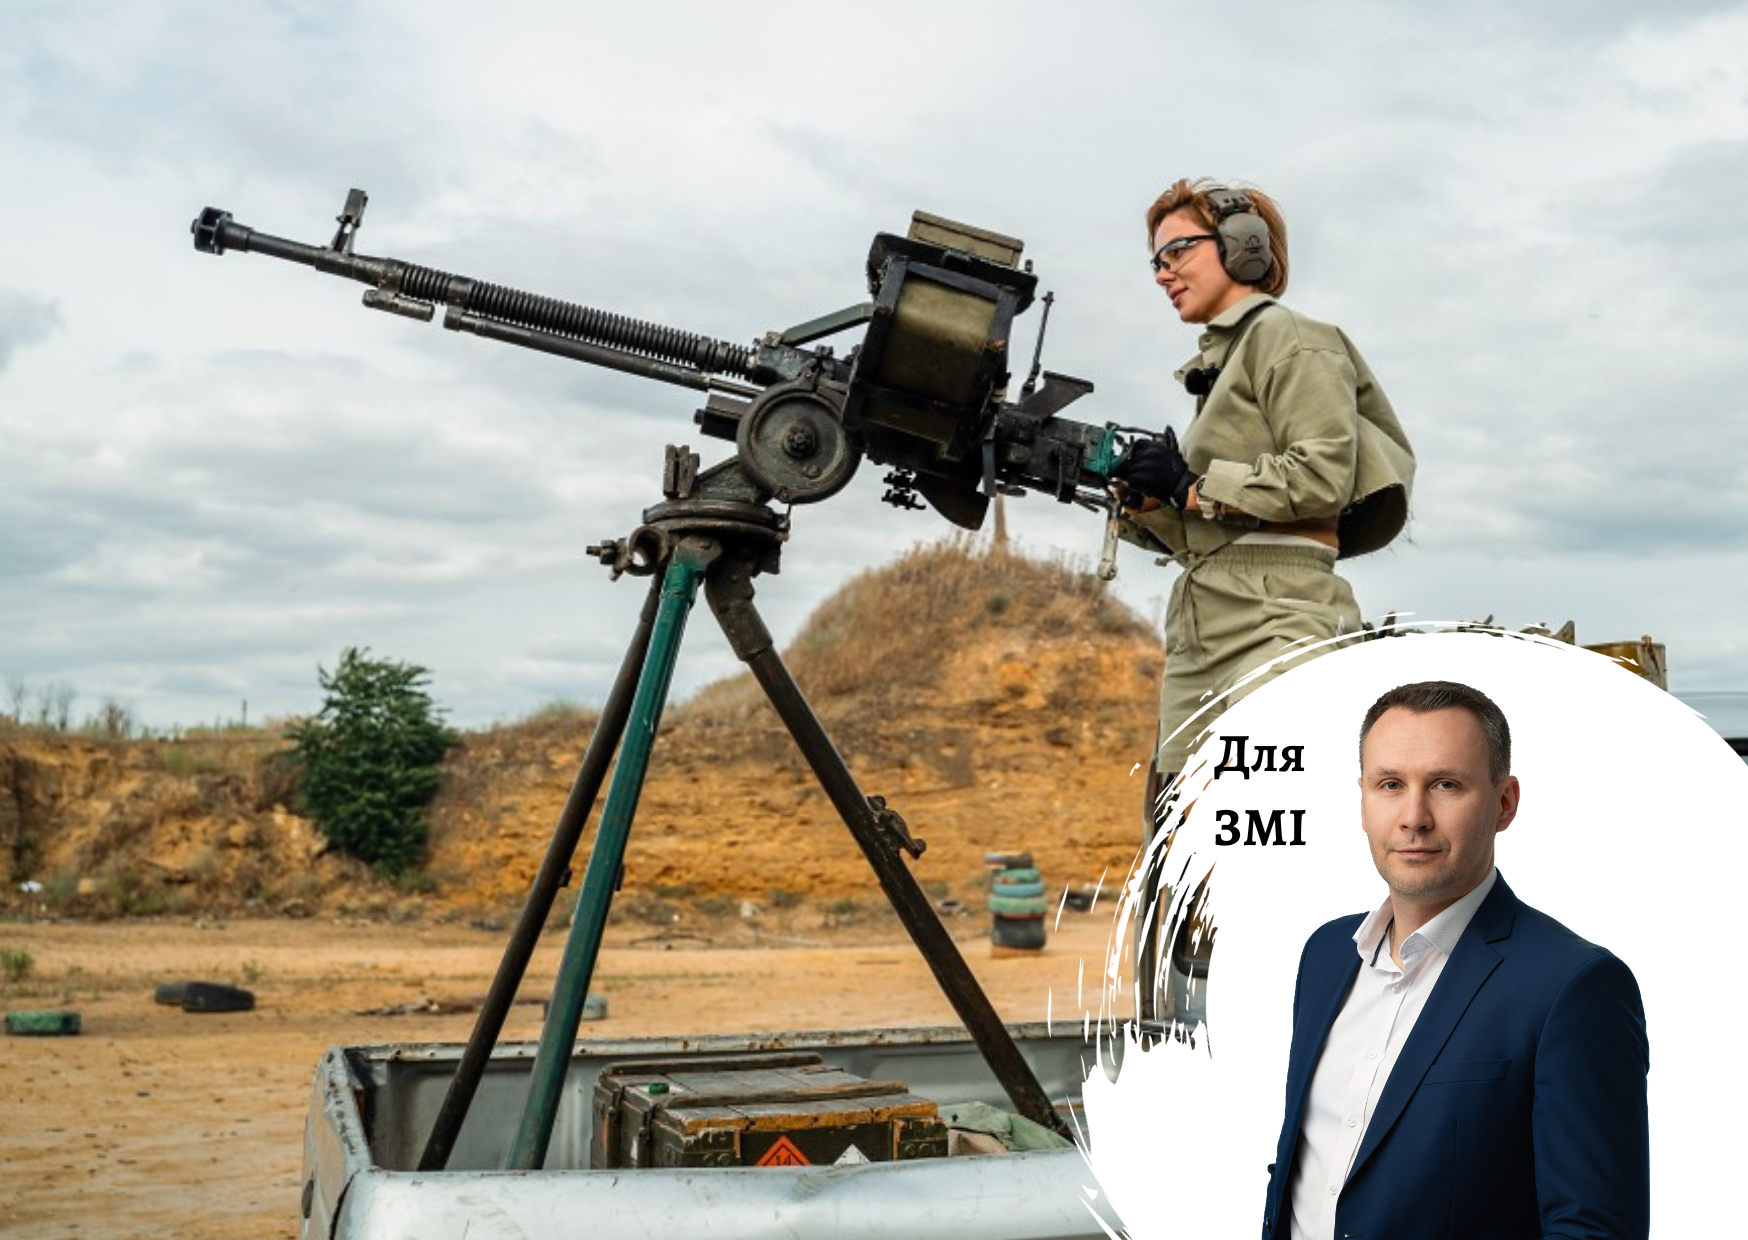 Как персональный бренд помог Татьяне Яшкиной продавать оружие на около 80 млн грн – комментарии по рынку оружия от гендиректора Pro-Consulting Александра Соколова. FORBES